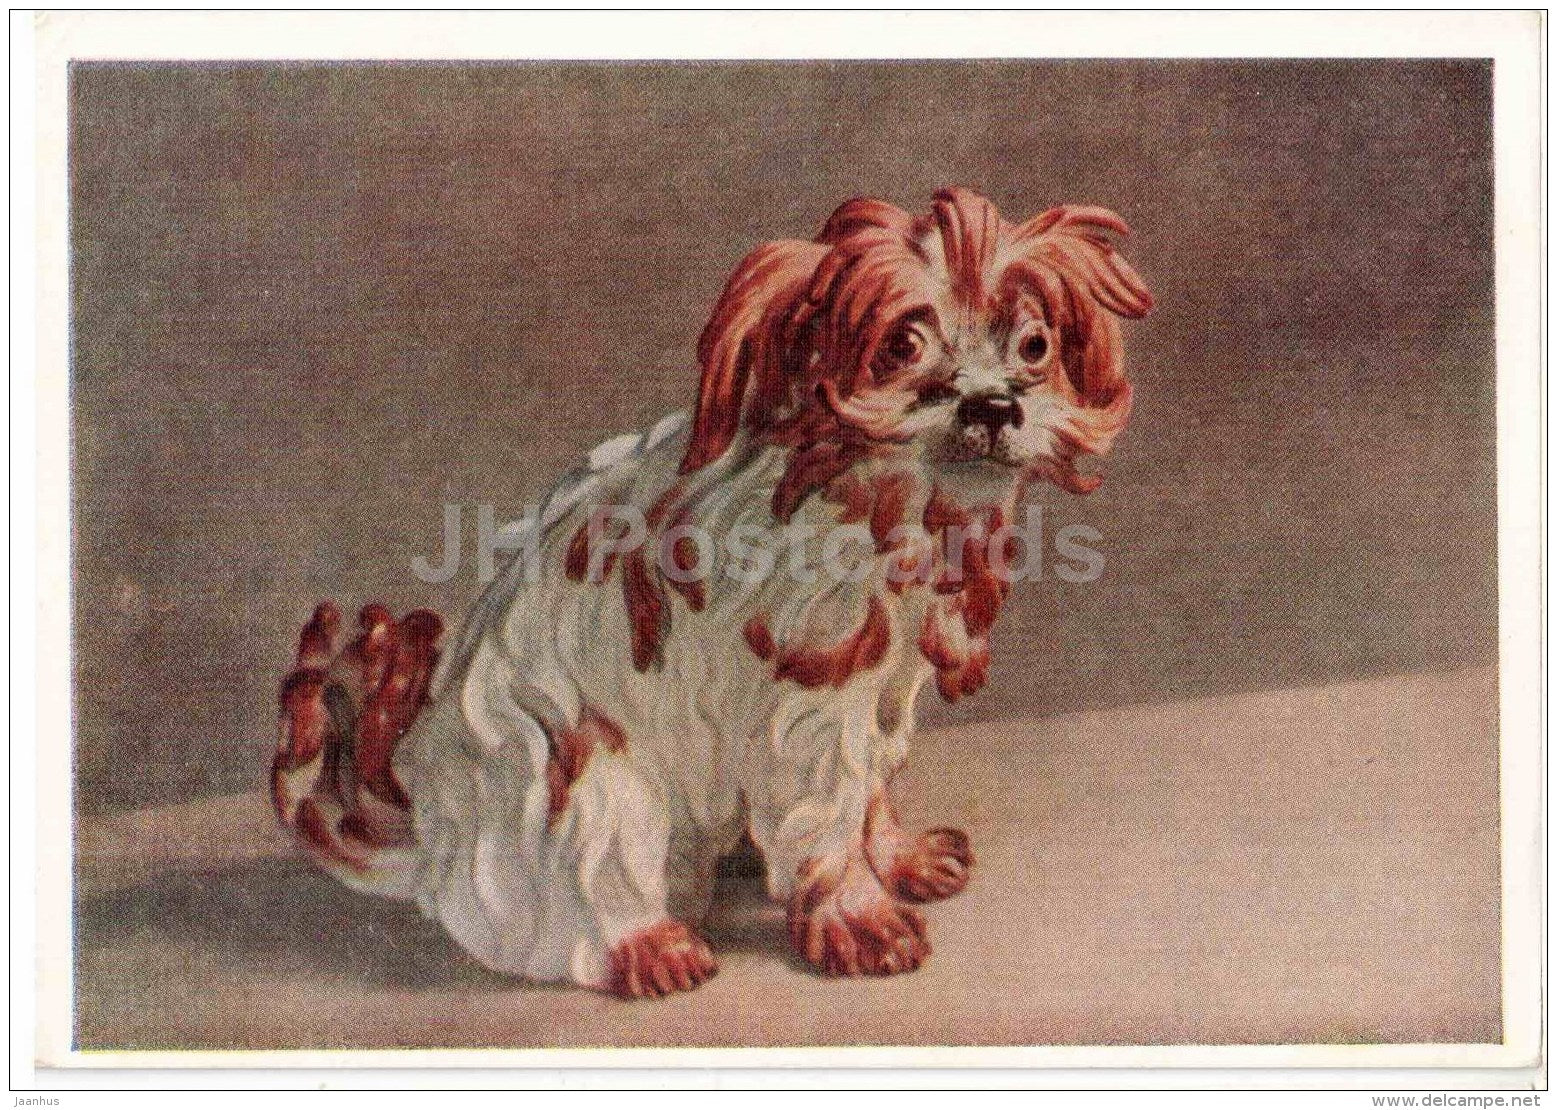 Figurine by Johann Joachim Kändler - Lap-dog , 1741 - Bolonka - Meissen porcelain - 1956 - Russia USSR - unused - JH Postcards